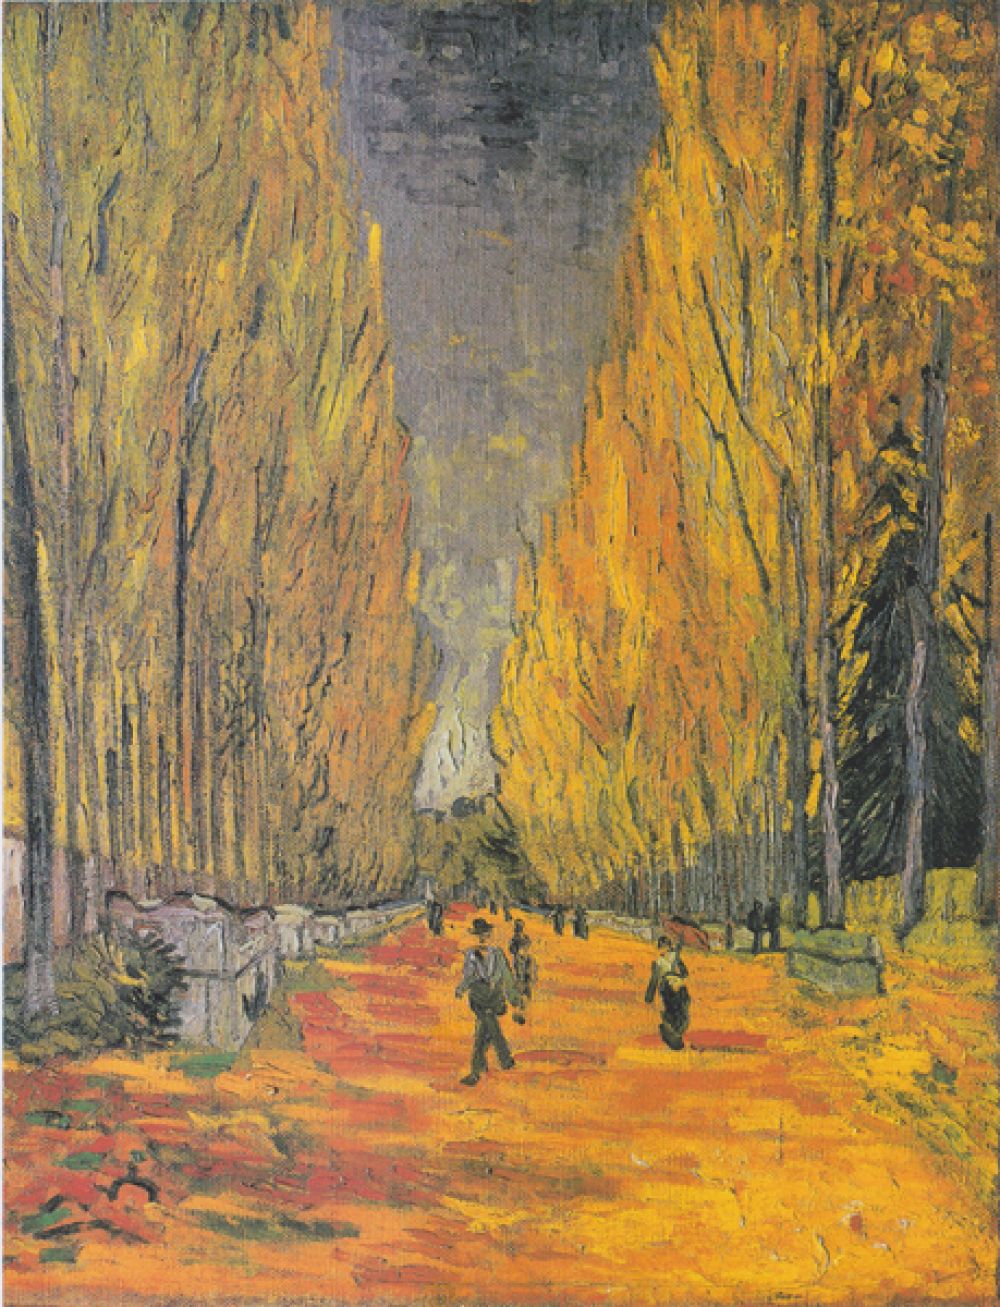 Картина «Алискамп» была продана на аукционе Sotheby